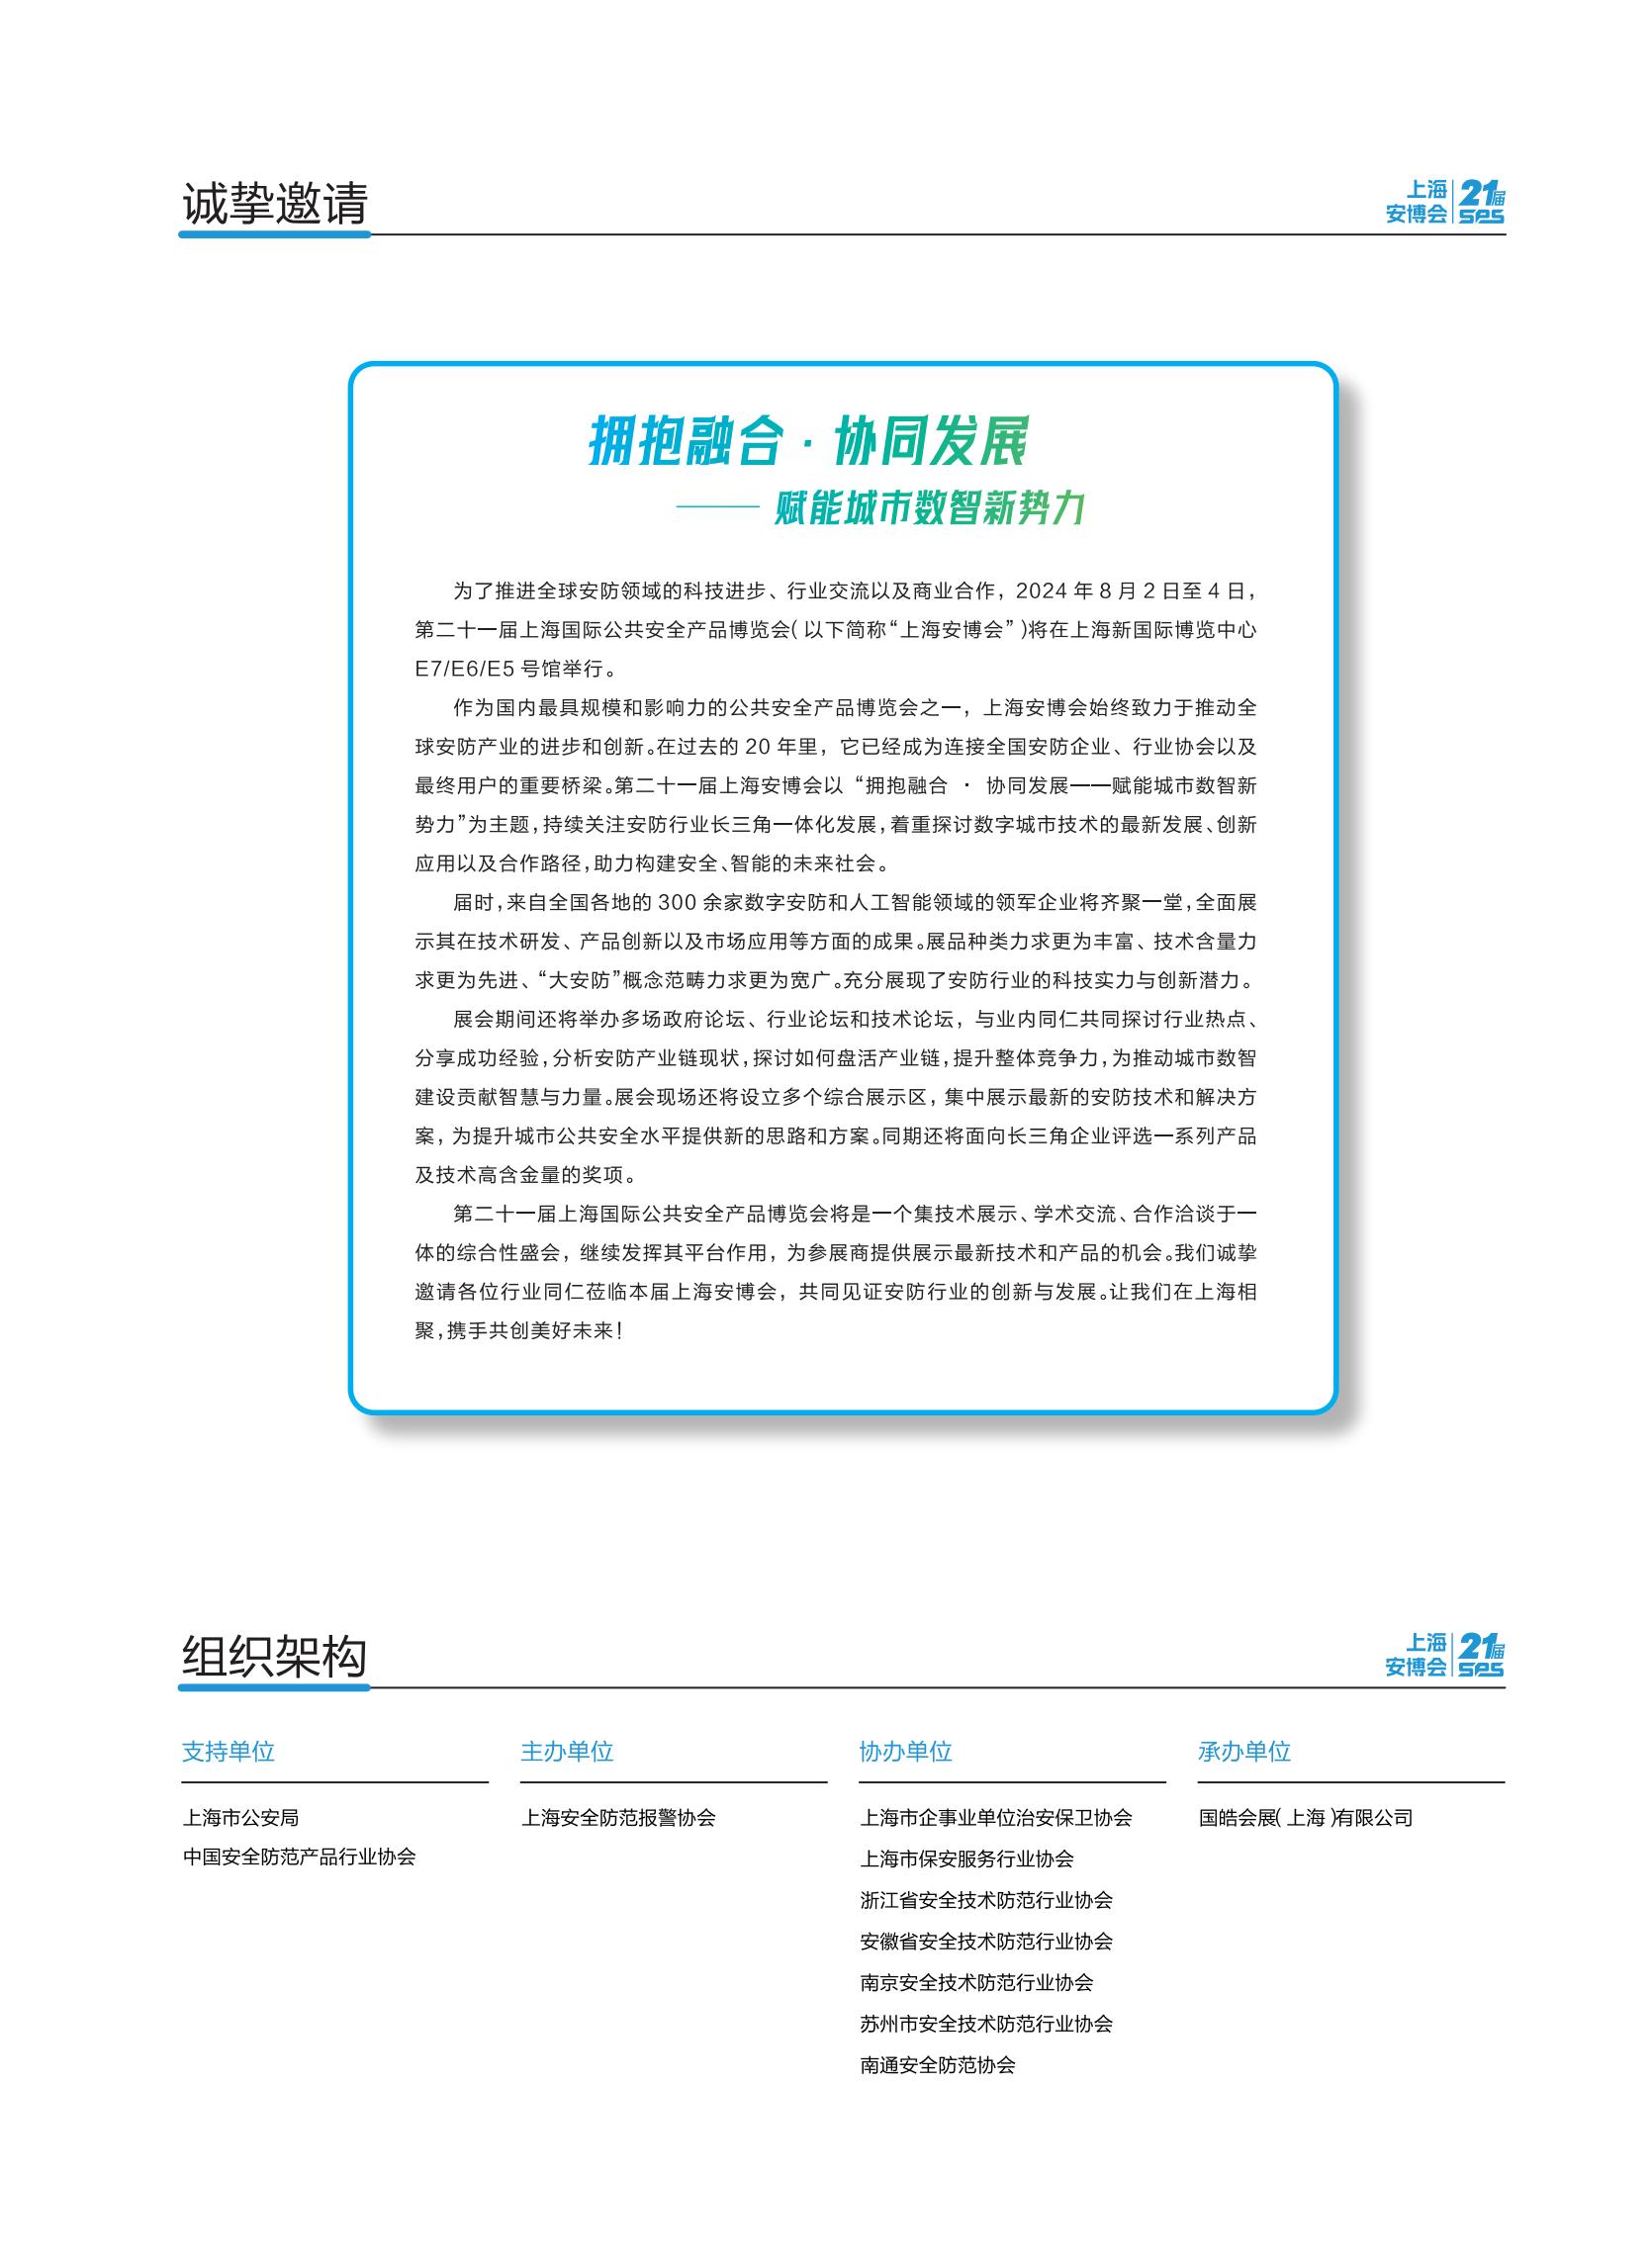 第21届上海国际公共安全产品博览会邀请函_01.jpg